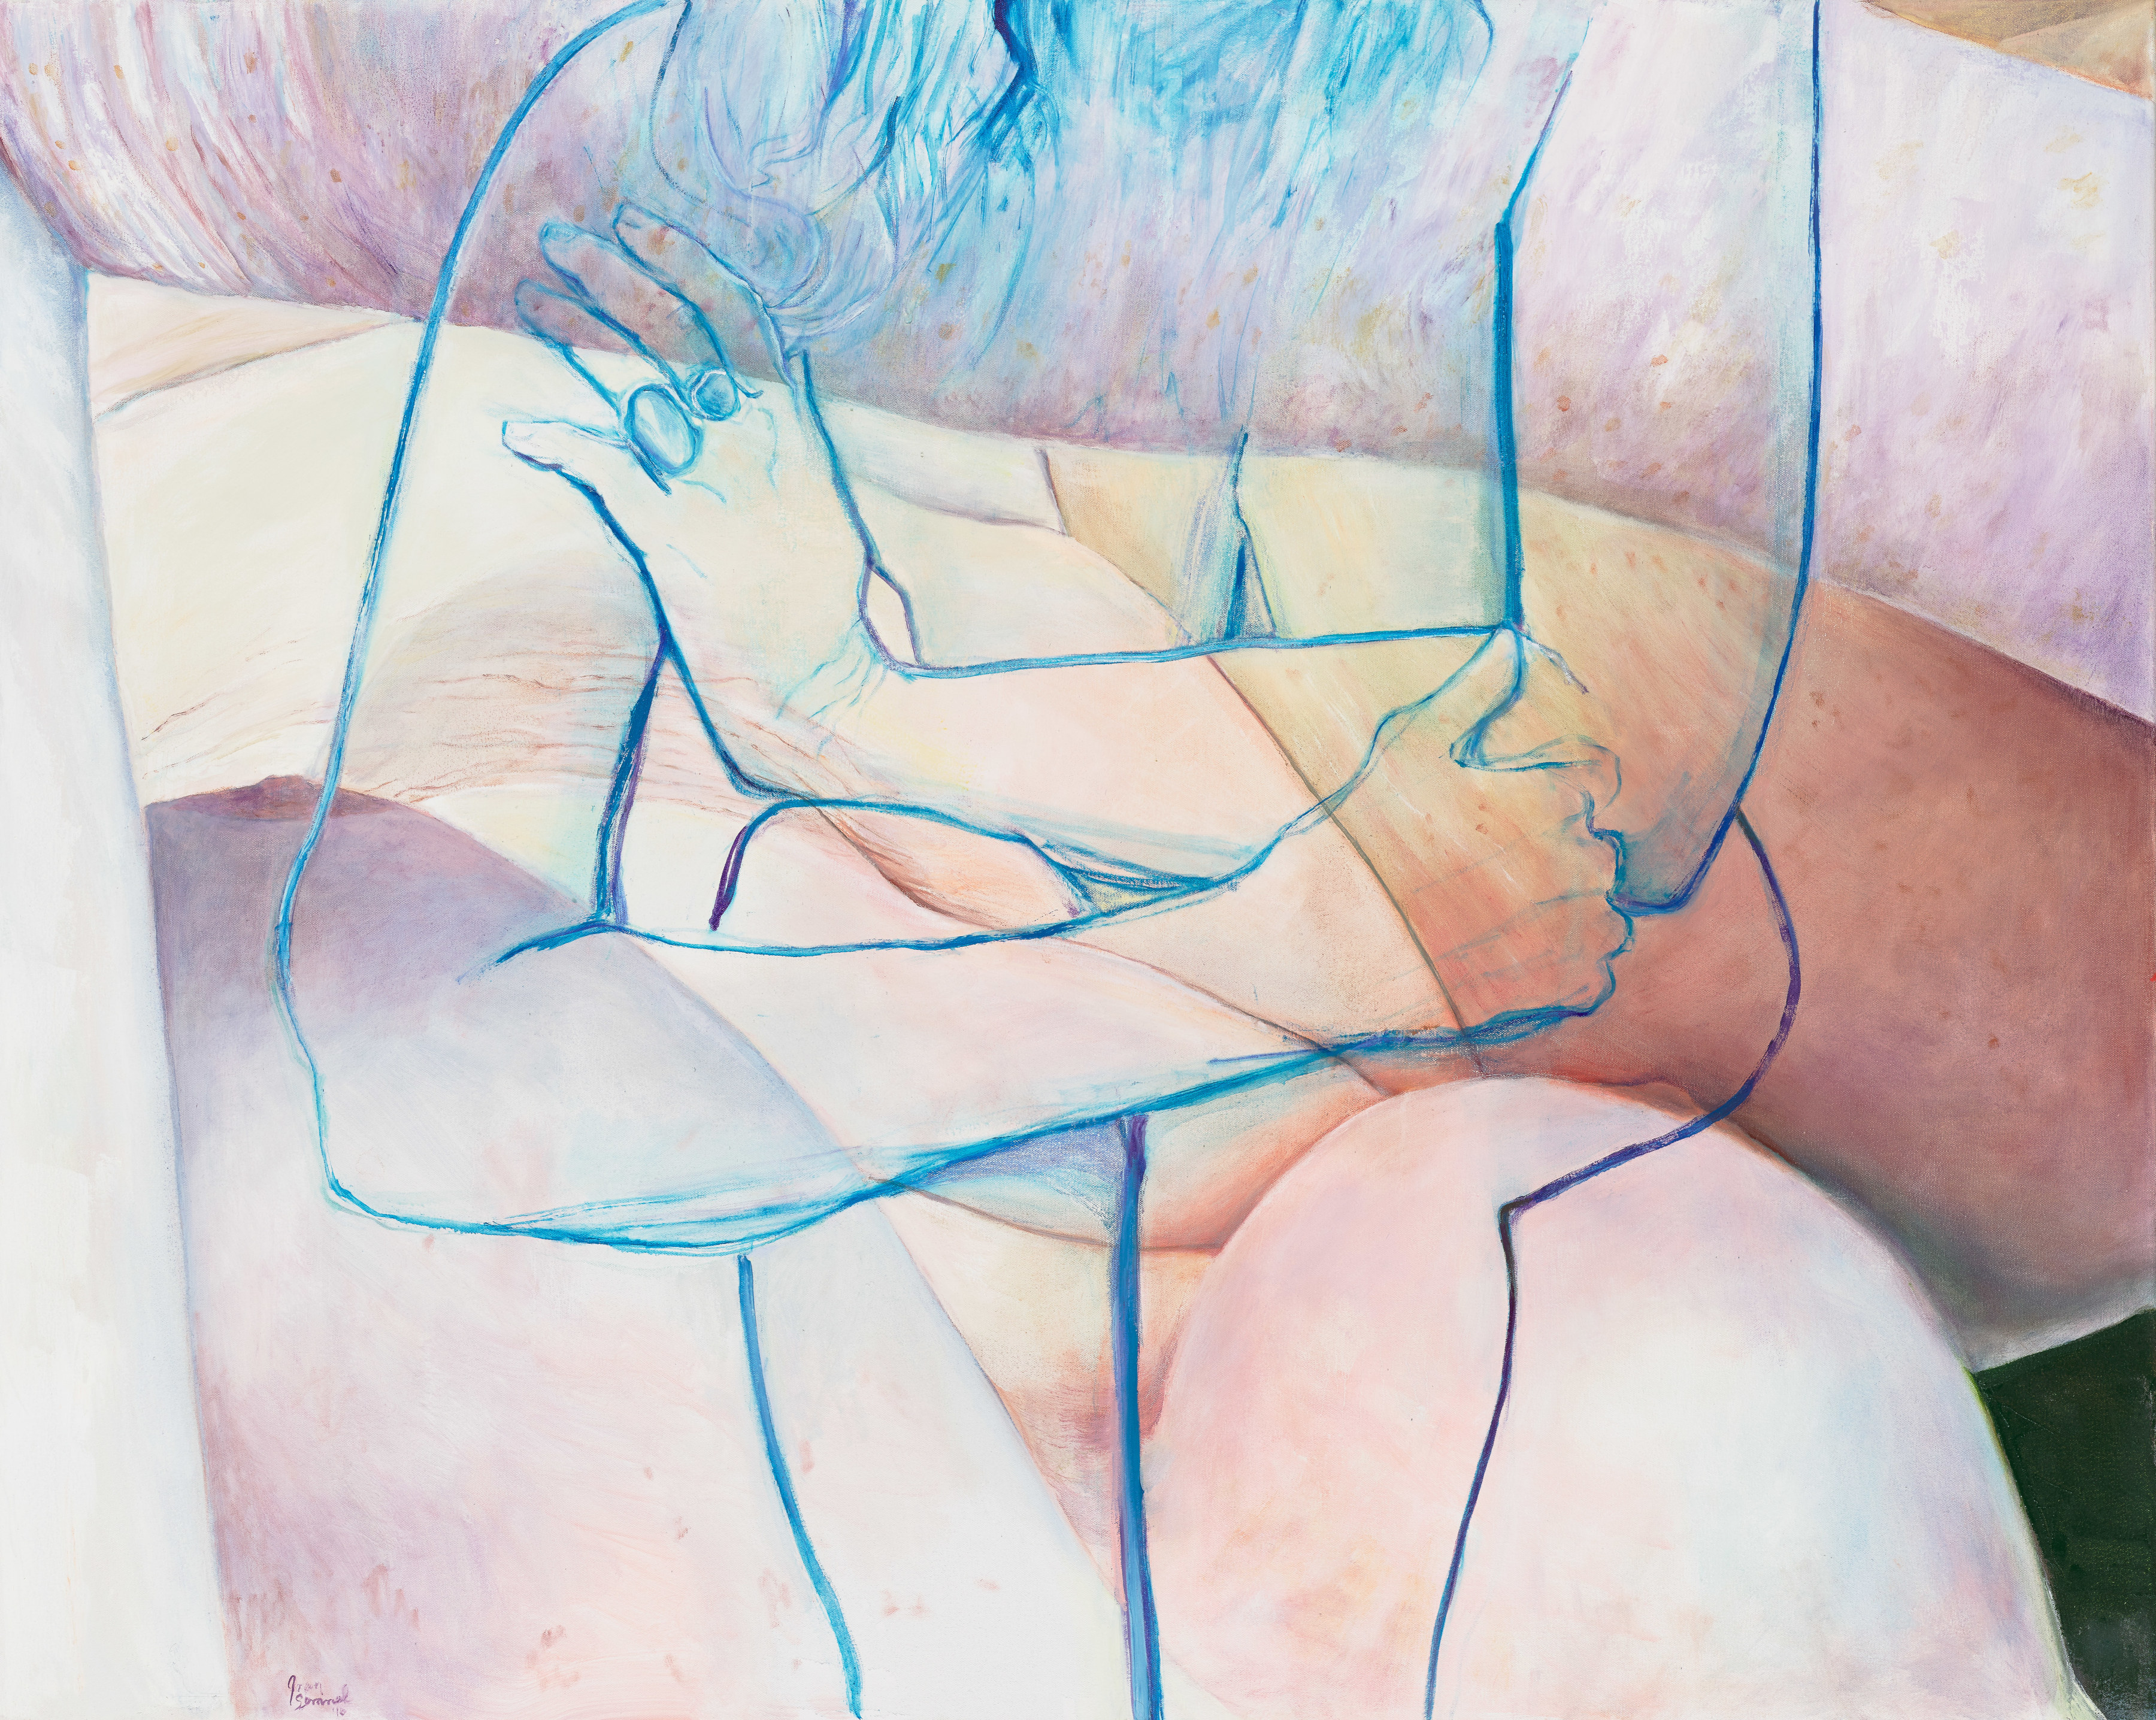 Joan Semmel, Blue Embrace, 2016